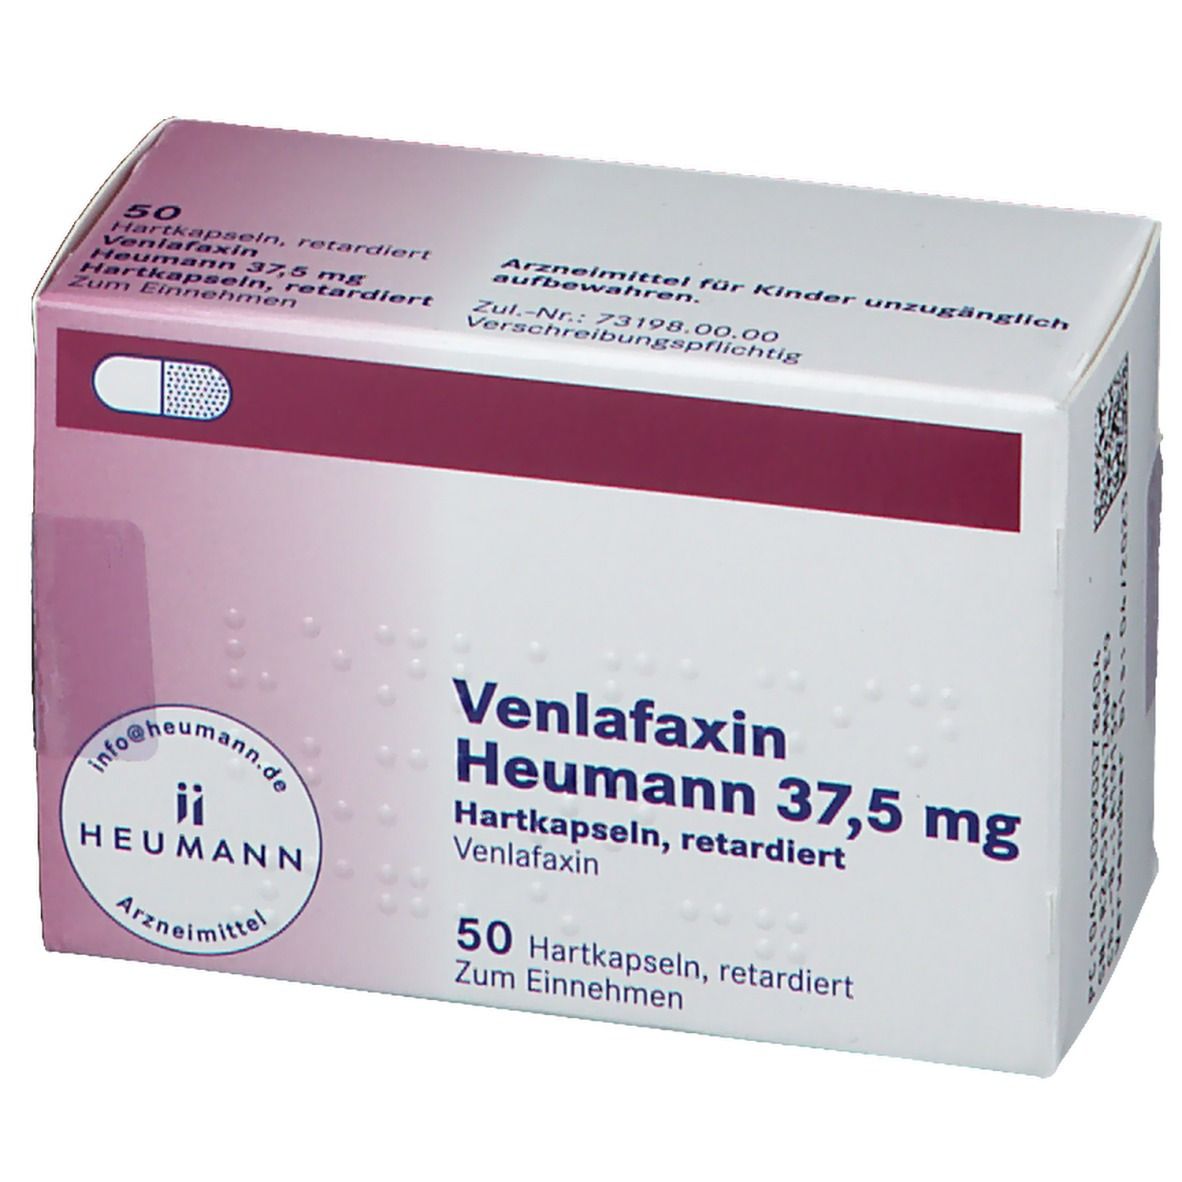 Venlafaxin Heumann 37,5 mg Hartkapseln, retardiert